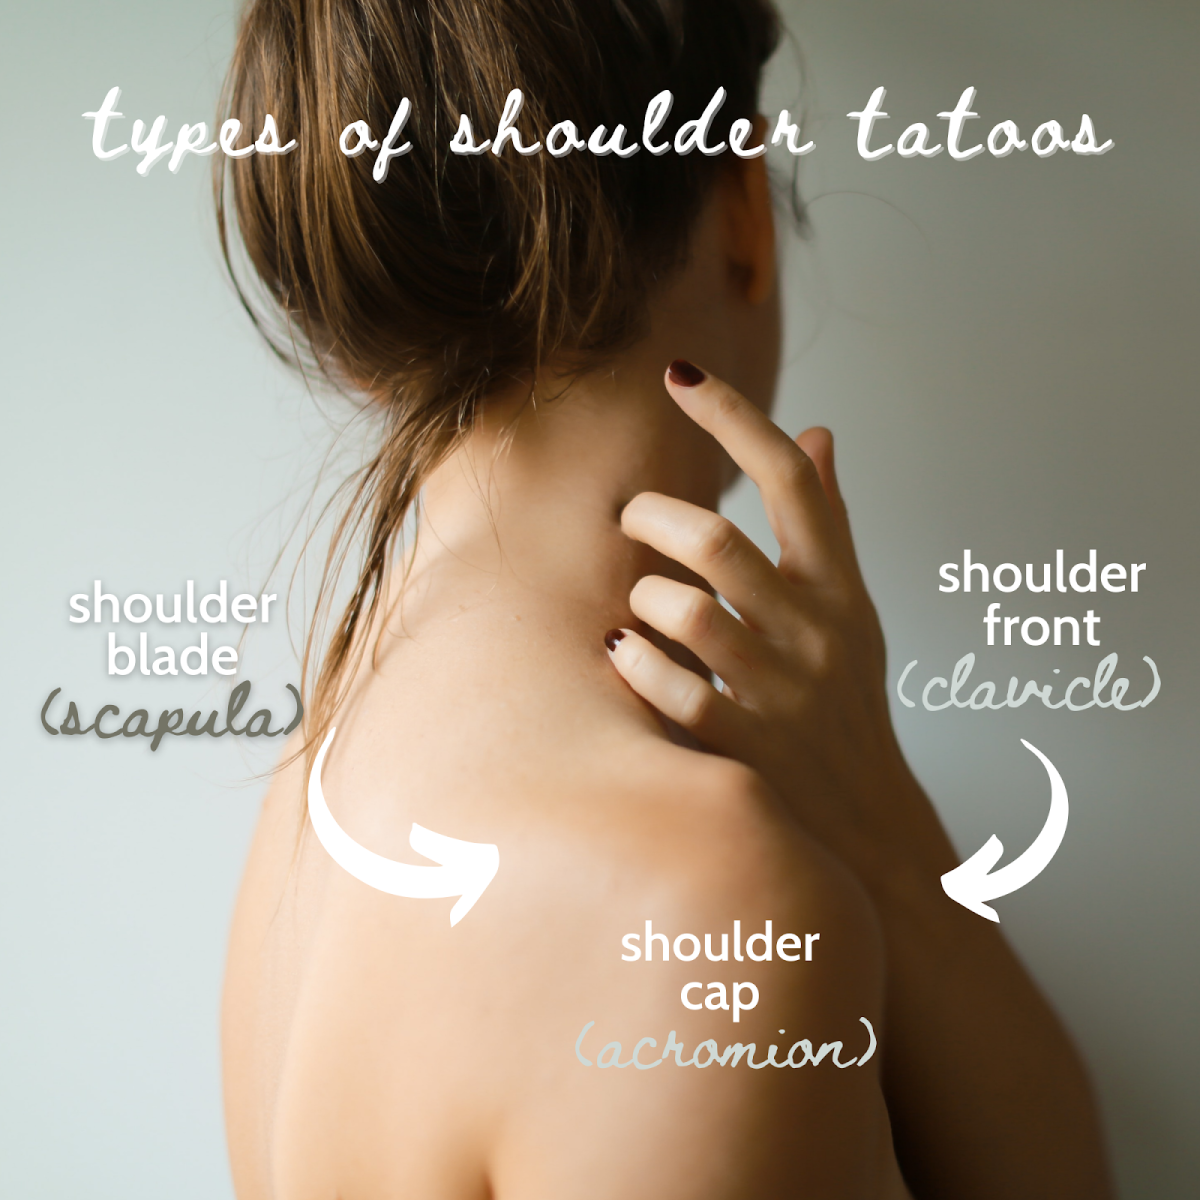 Eri paikoissa voit saada olkapään tatuoinnin: lapaluun, akromionin tai solisluun.